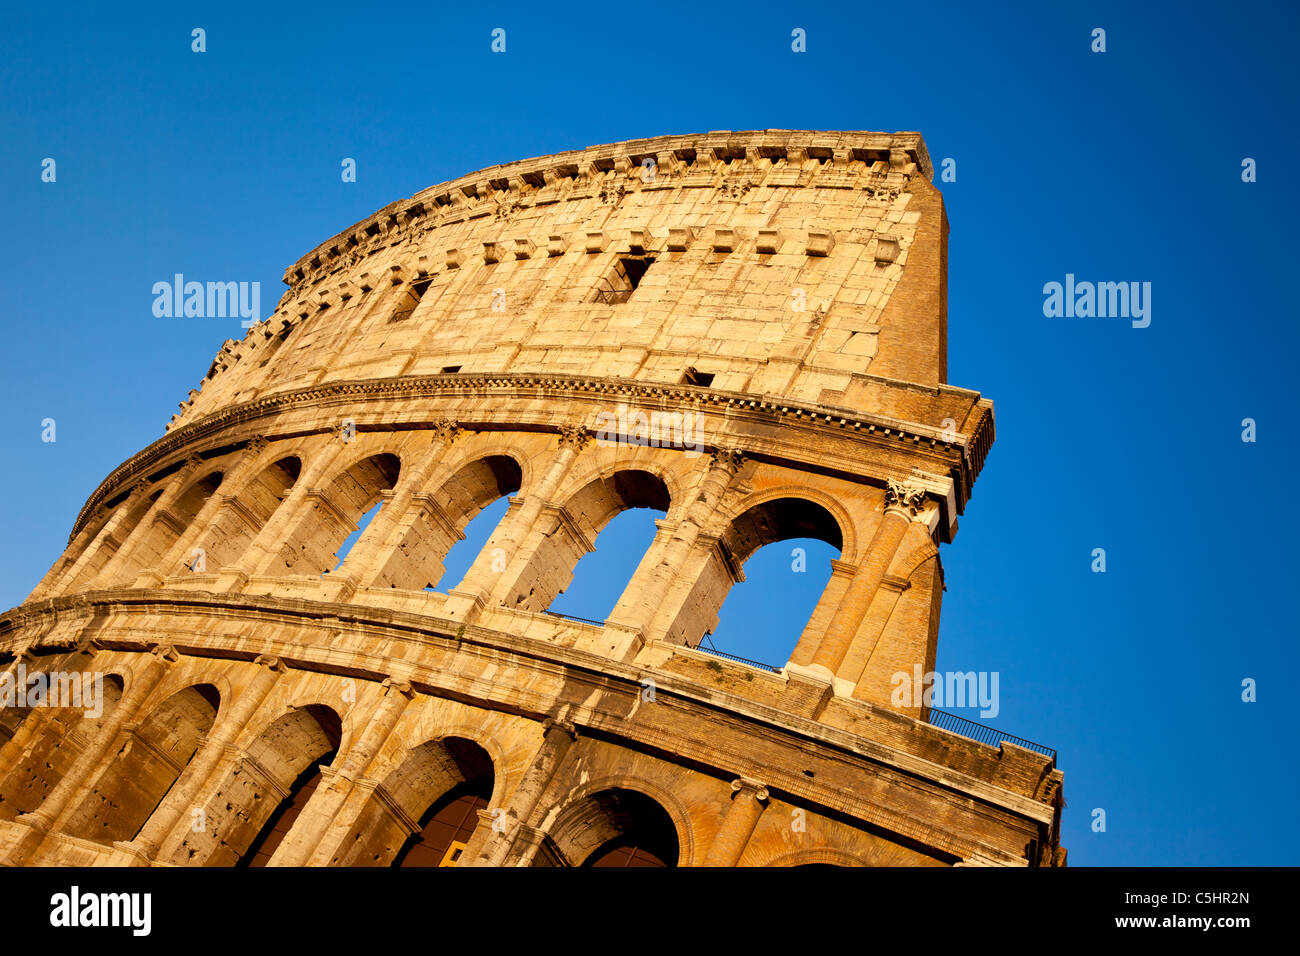 Le Colisée romain au coucher du soleil, Rome Lazio Italie Banque D'Images